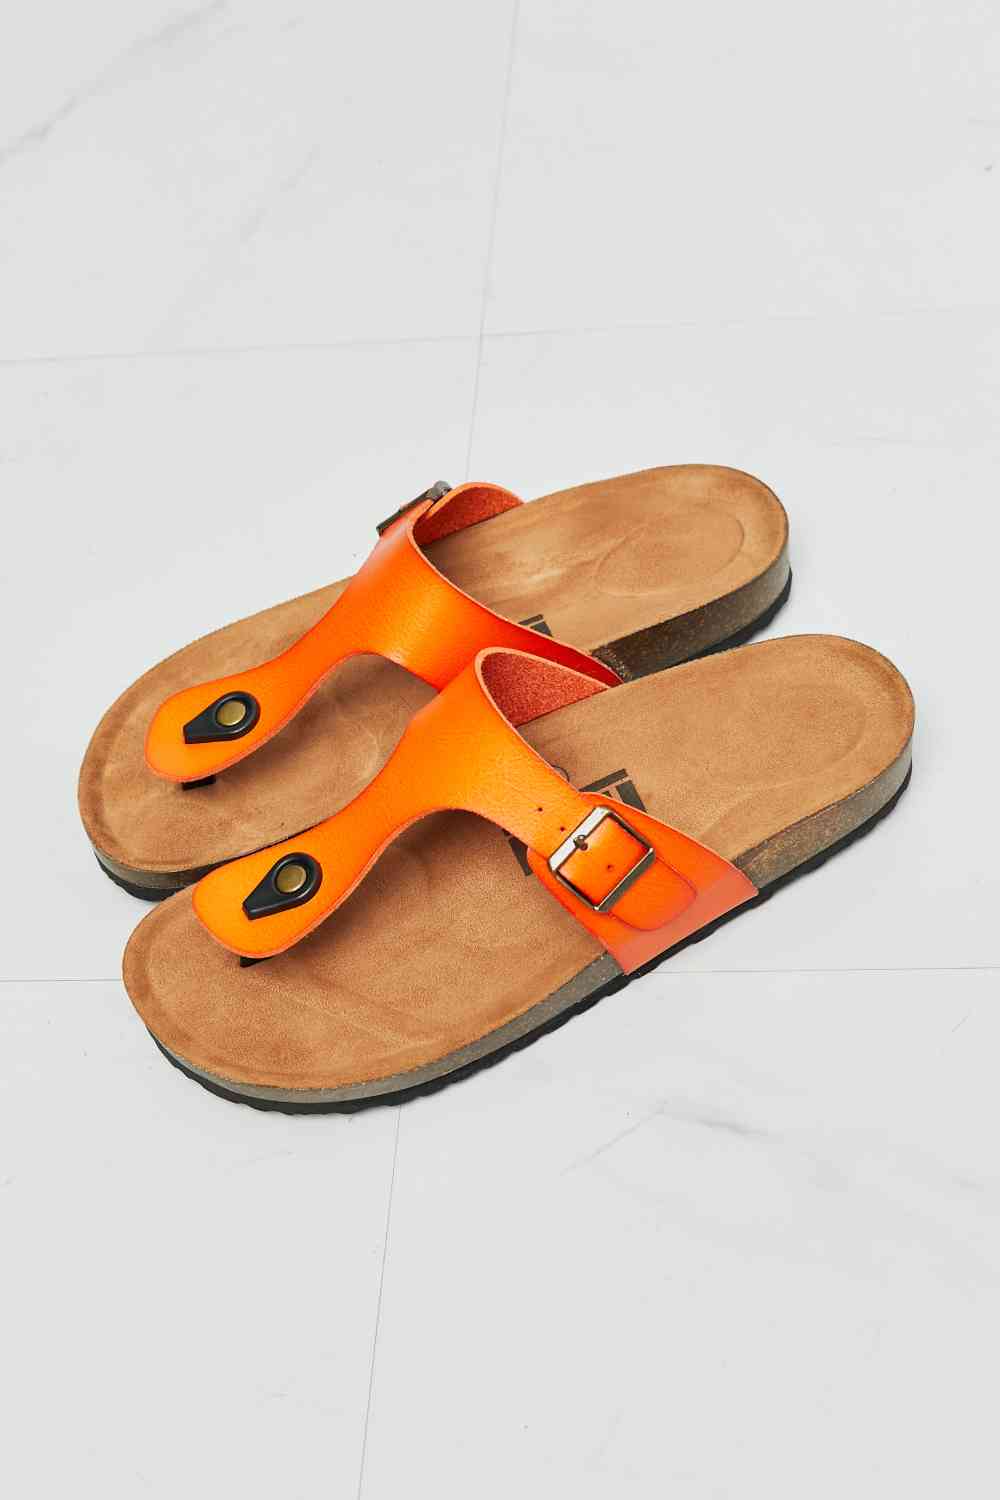 MMShoes Drift Away T-Strap Flip-Flop in Orange - BloomBliss.com